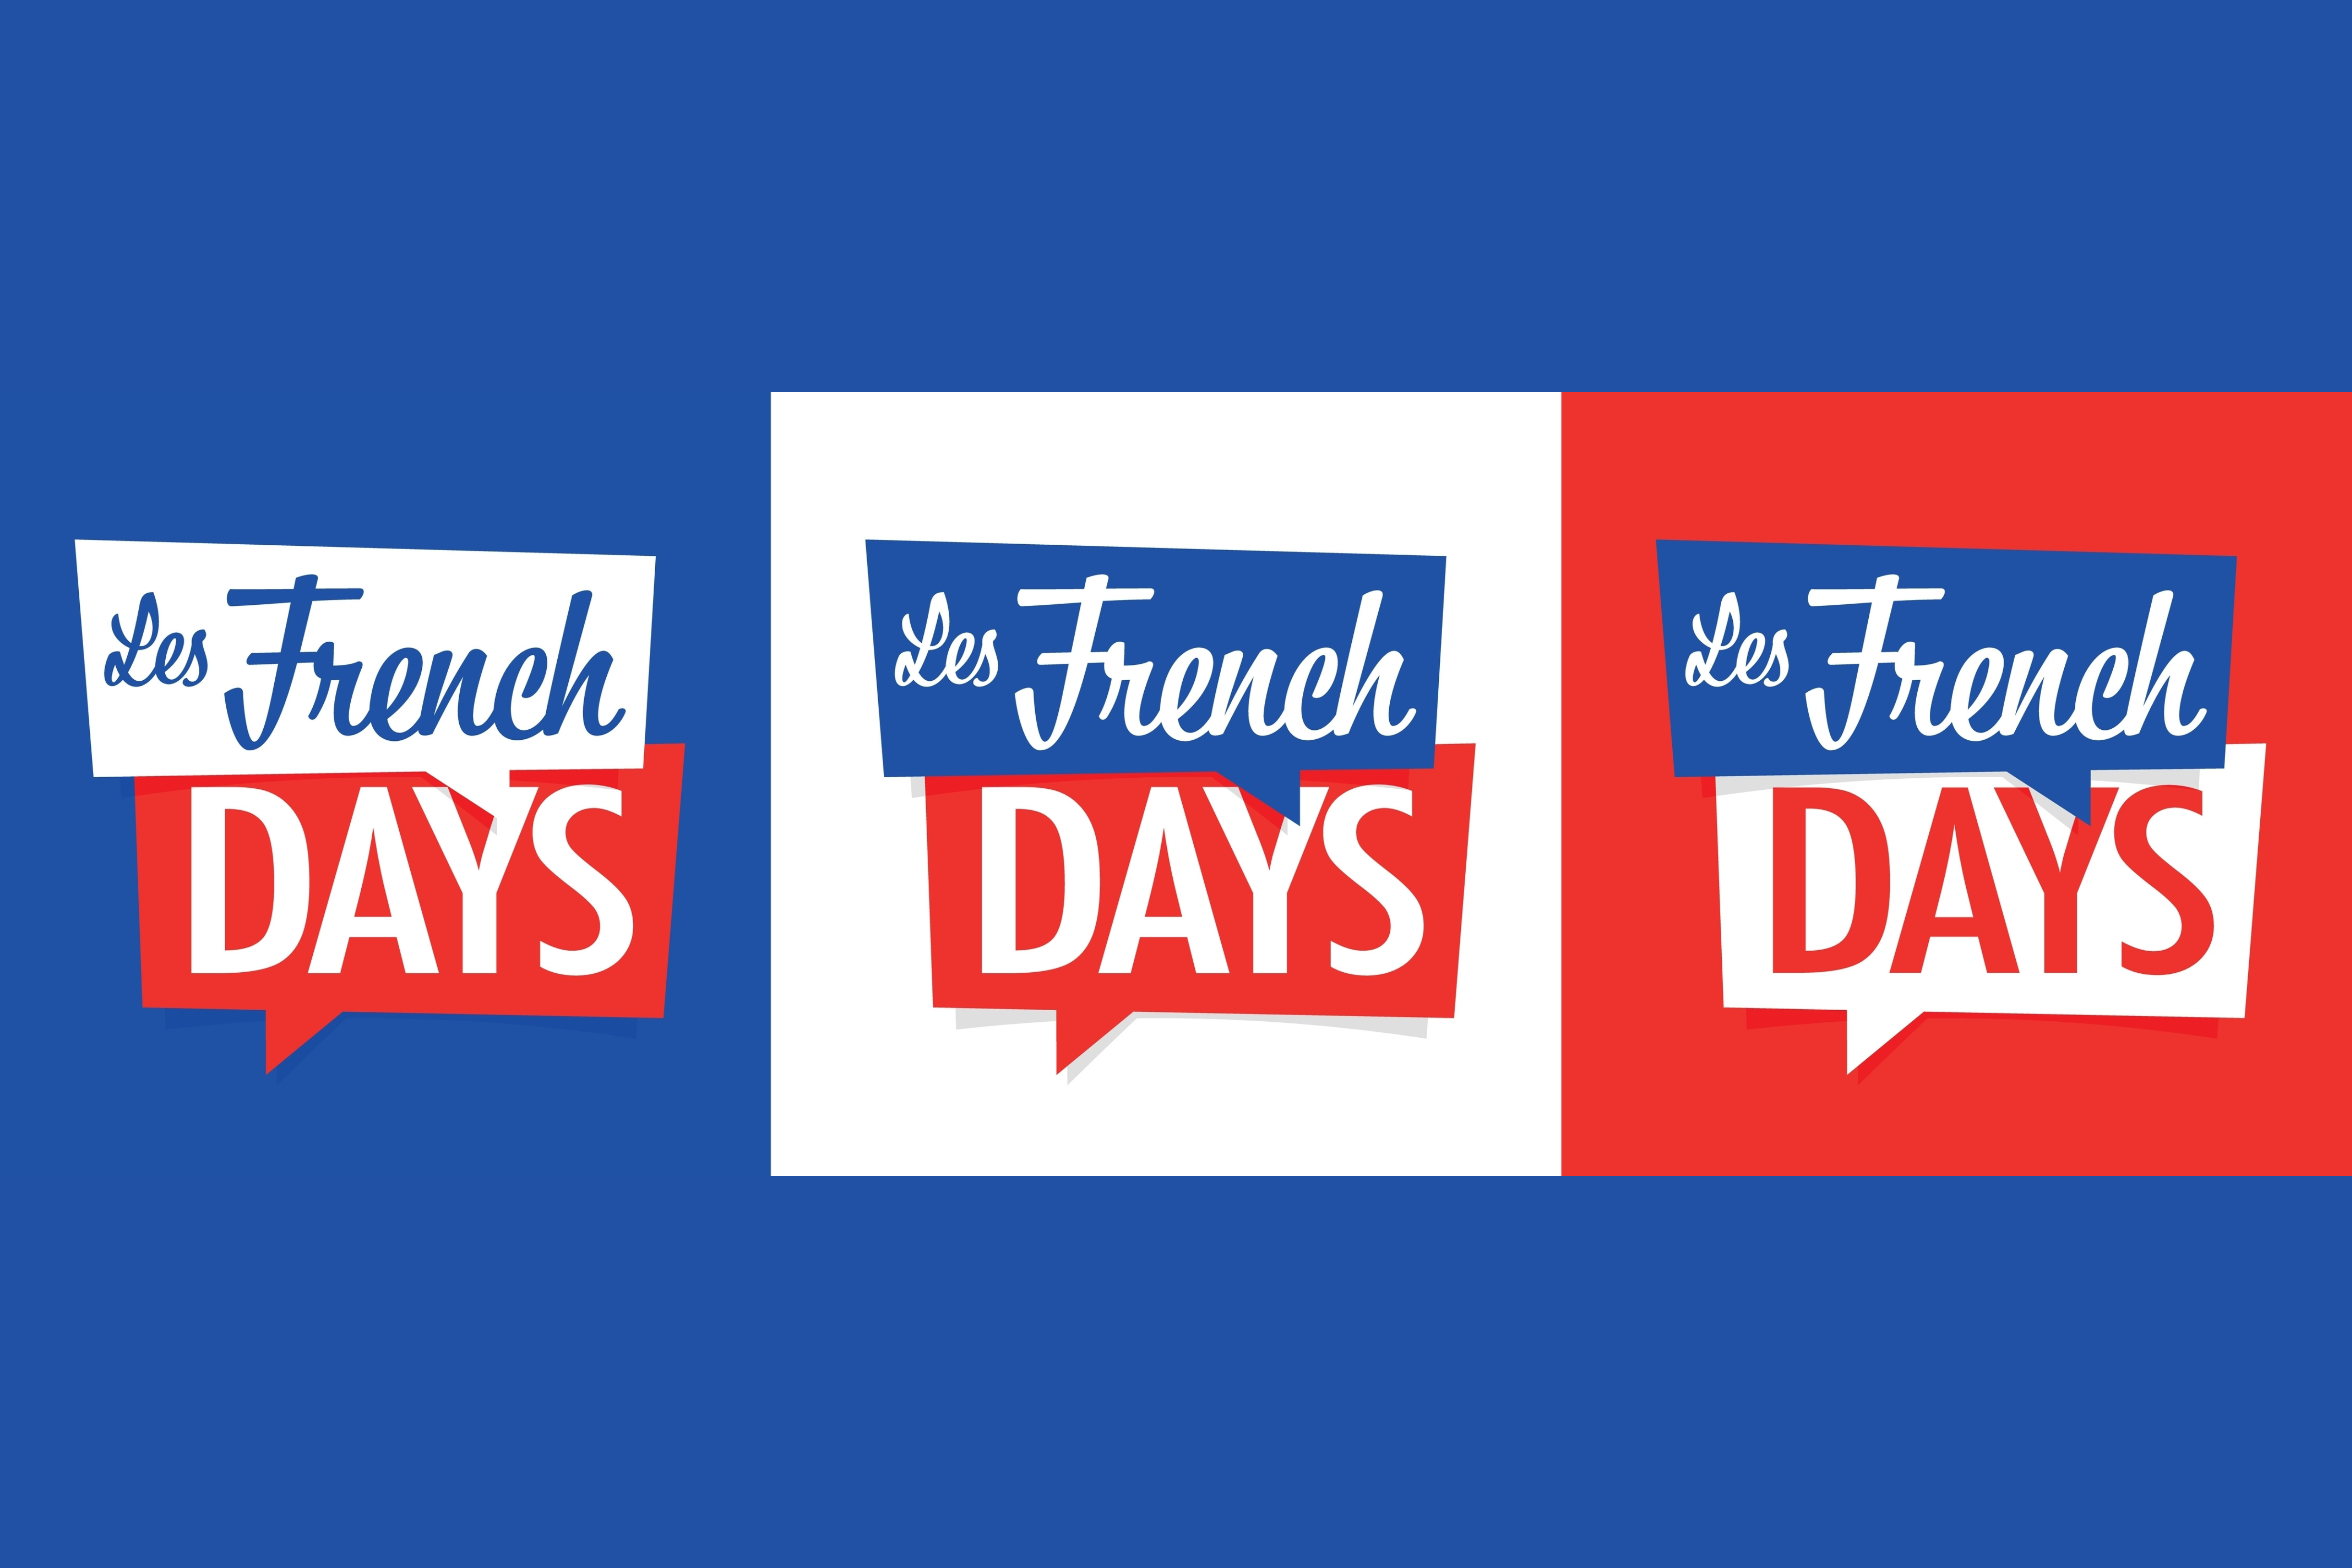 French Days rue du commerce © Shutterstock